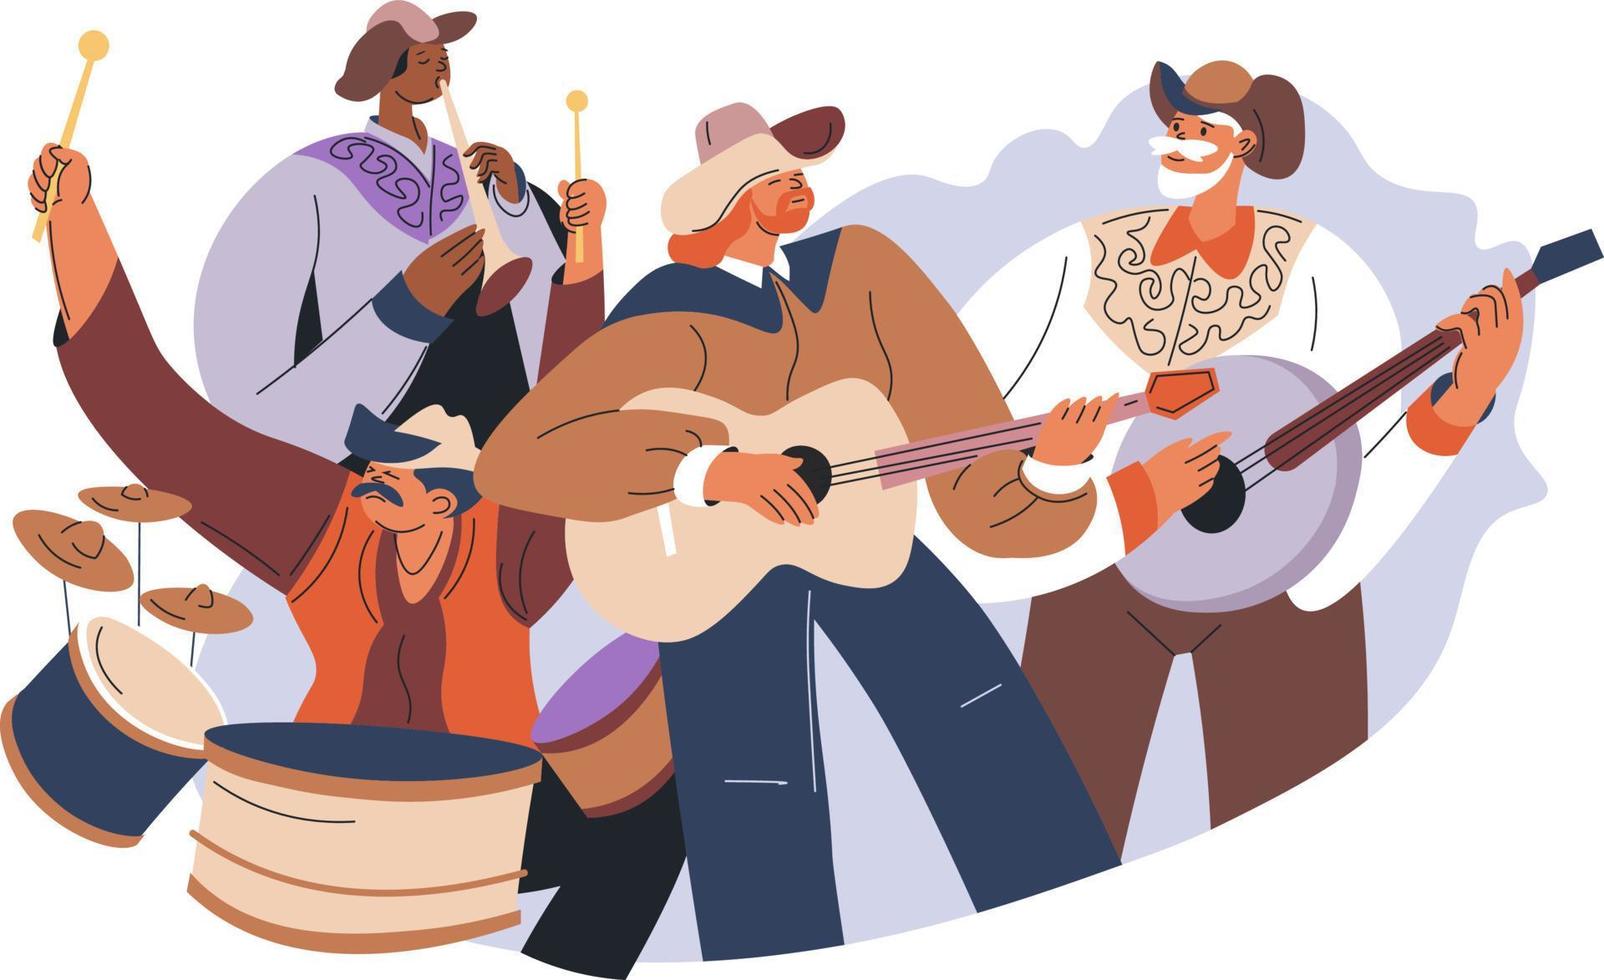 senior människor spelar i musik band, Land genre av sånger. människor bär cowboy hattar och använder sig av trummor, gitarrer och vokaler. repetition eller förberedelse för konsert och skede. vektor i platt stil